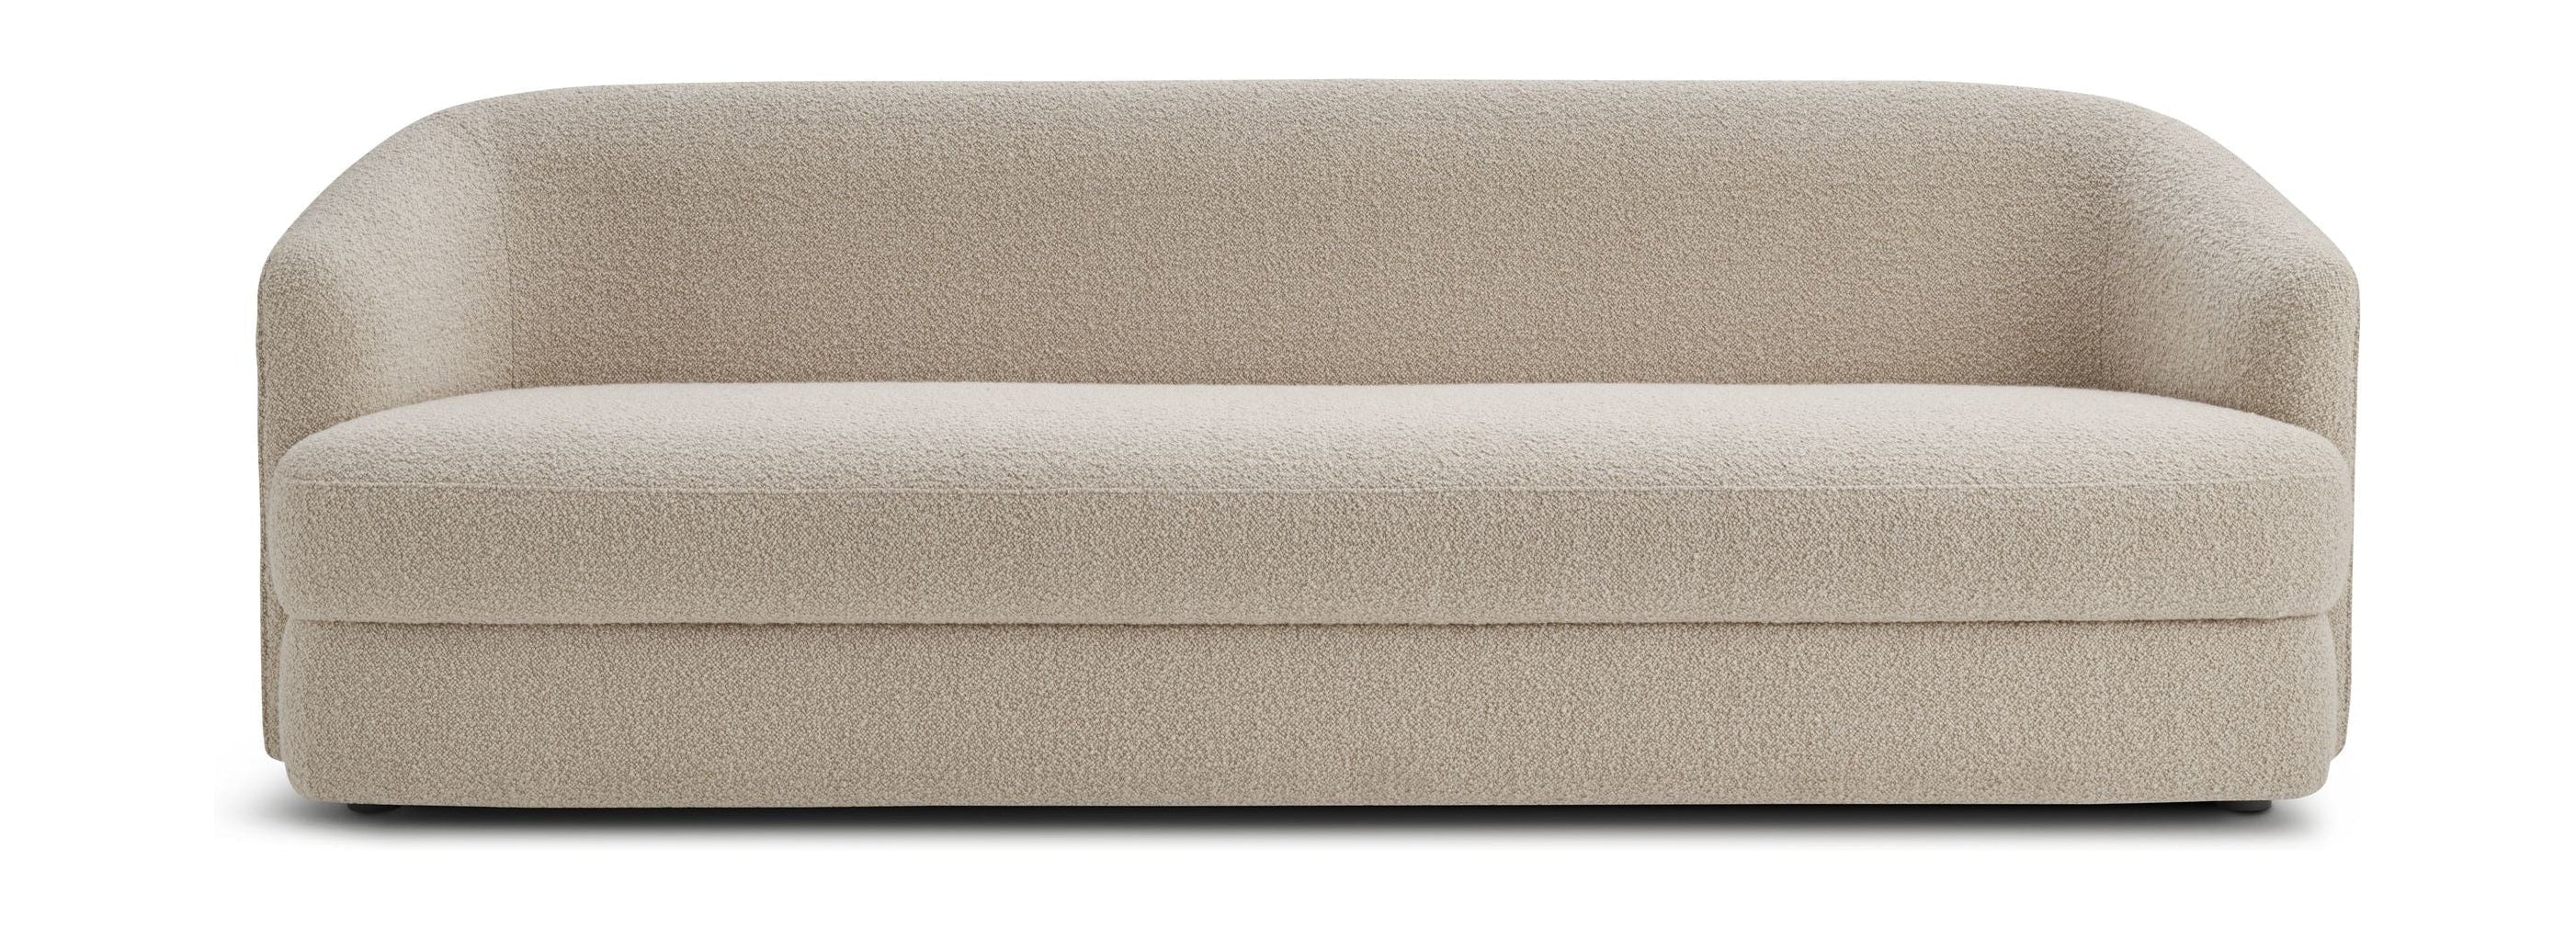 Nye værker covent sofa 3 sæder, sand